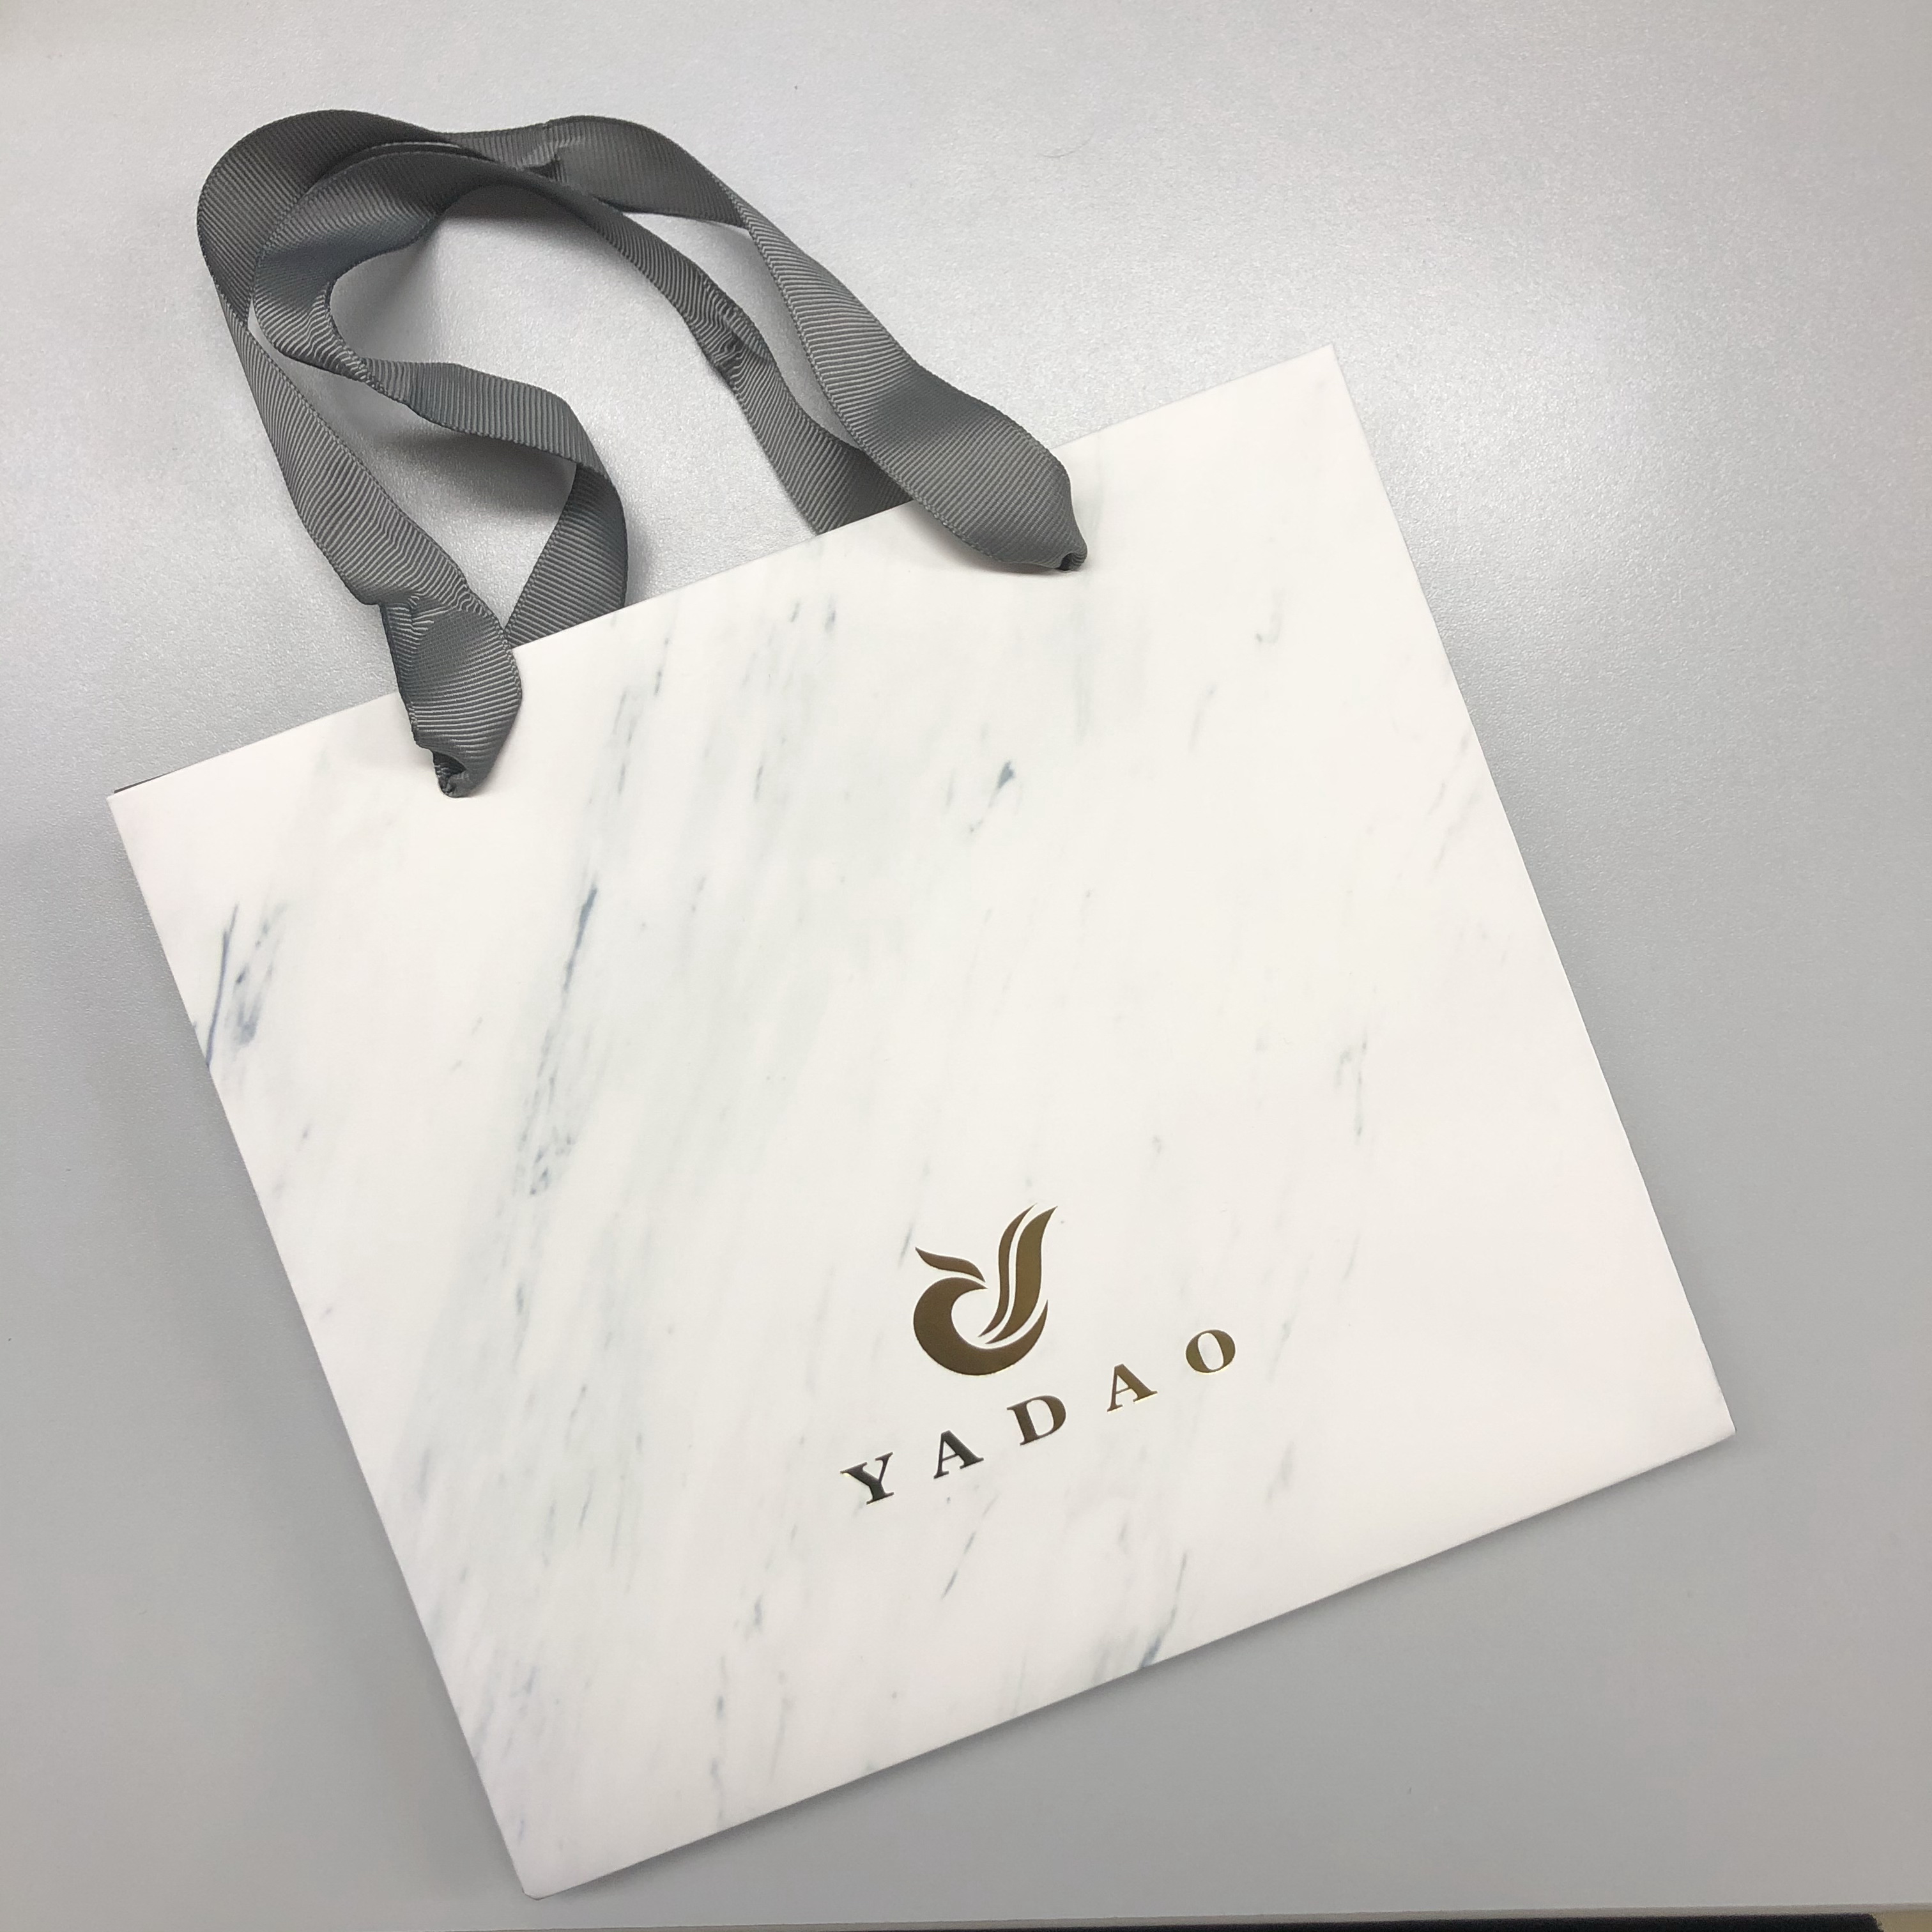 Borsa della spesa fatta a mano Yadao borsa in carta da stampa con trama in marmo con logo stampato a caldo e manico in nastro